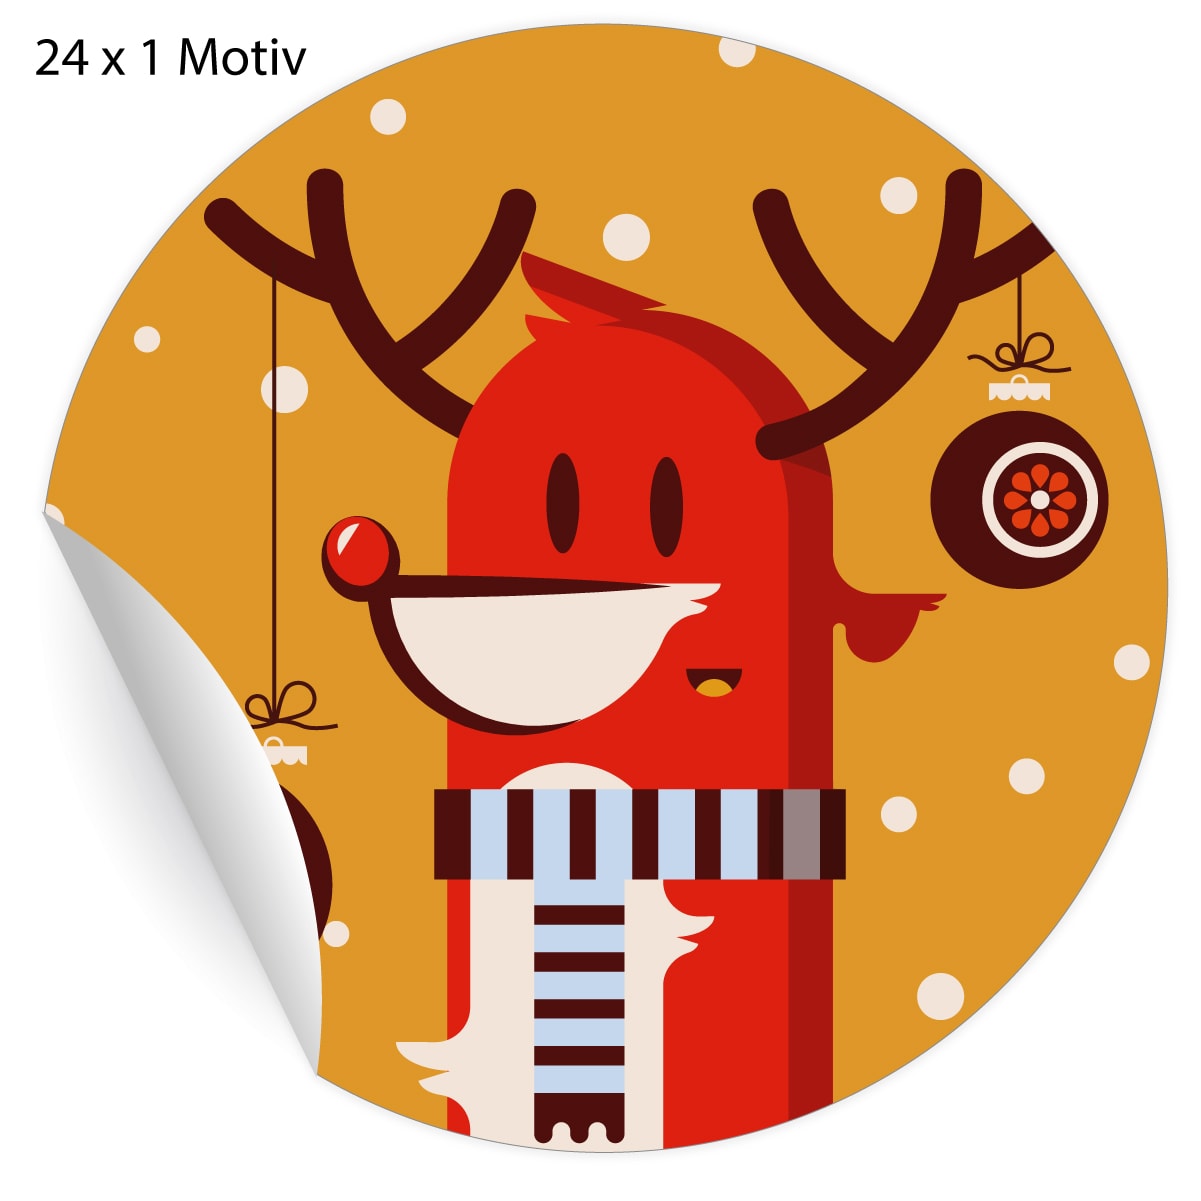 Kartenkaufrausch: Retro Weihnachts Aufkleber mit Hirsch aus unserer Weihnachts Papeterie in orange